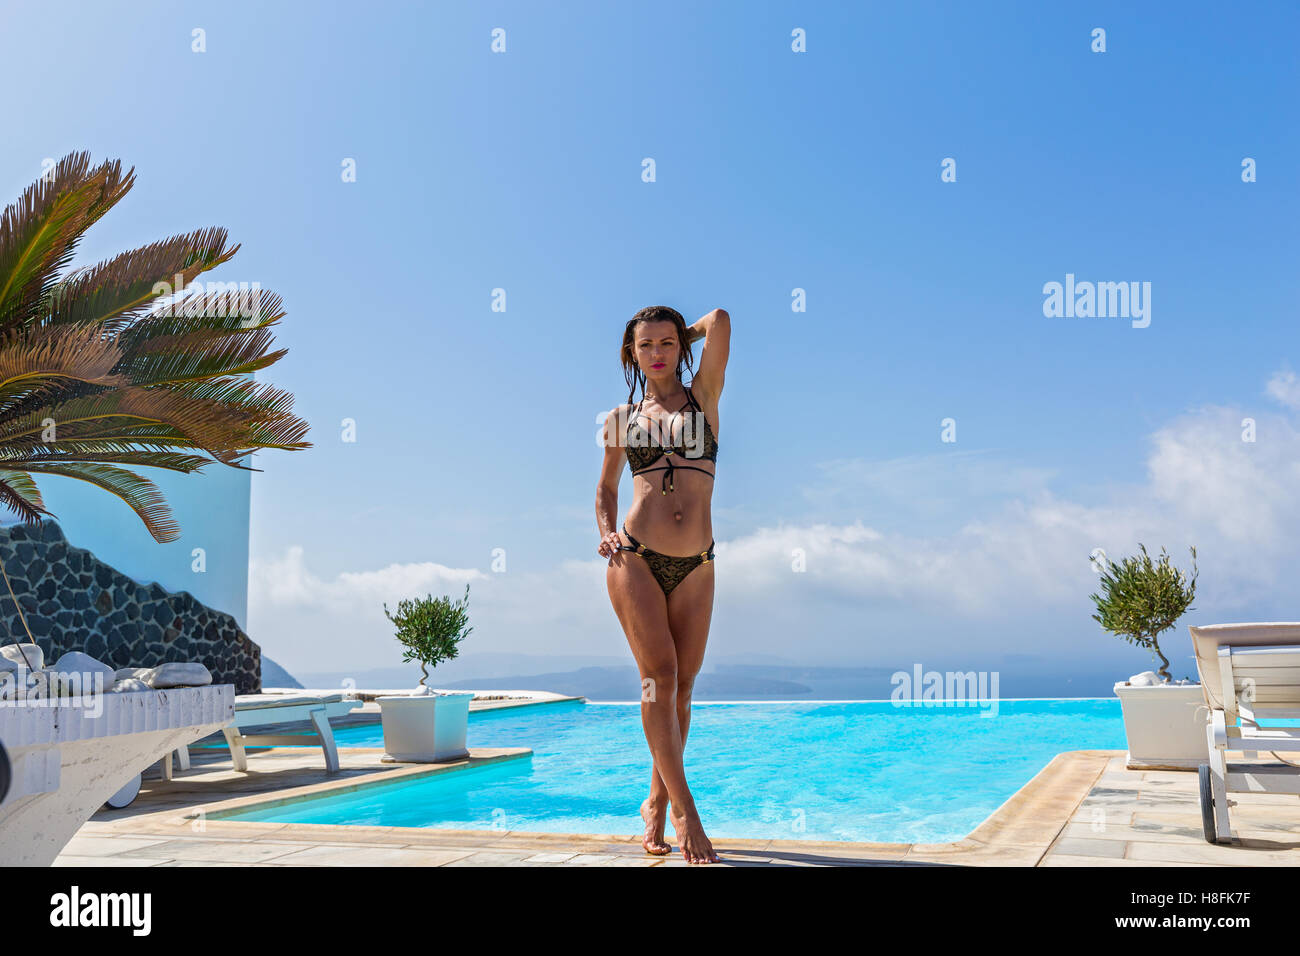 Beautiful woman in pool Stock Photo